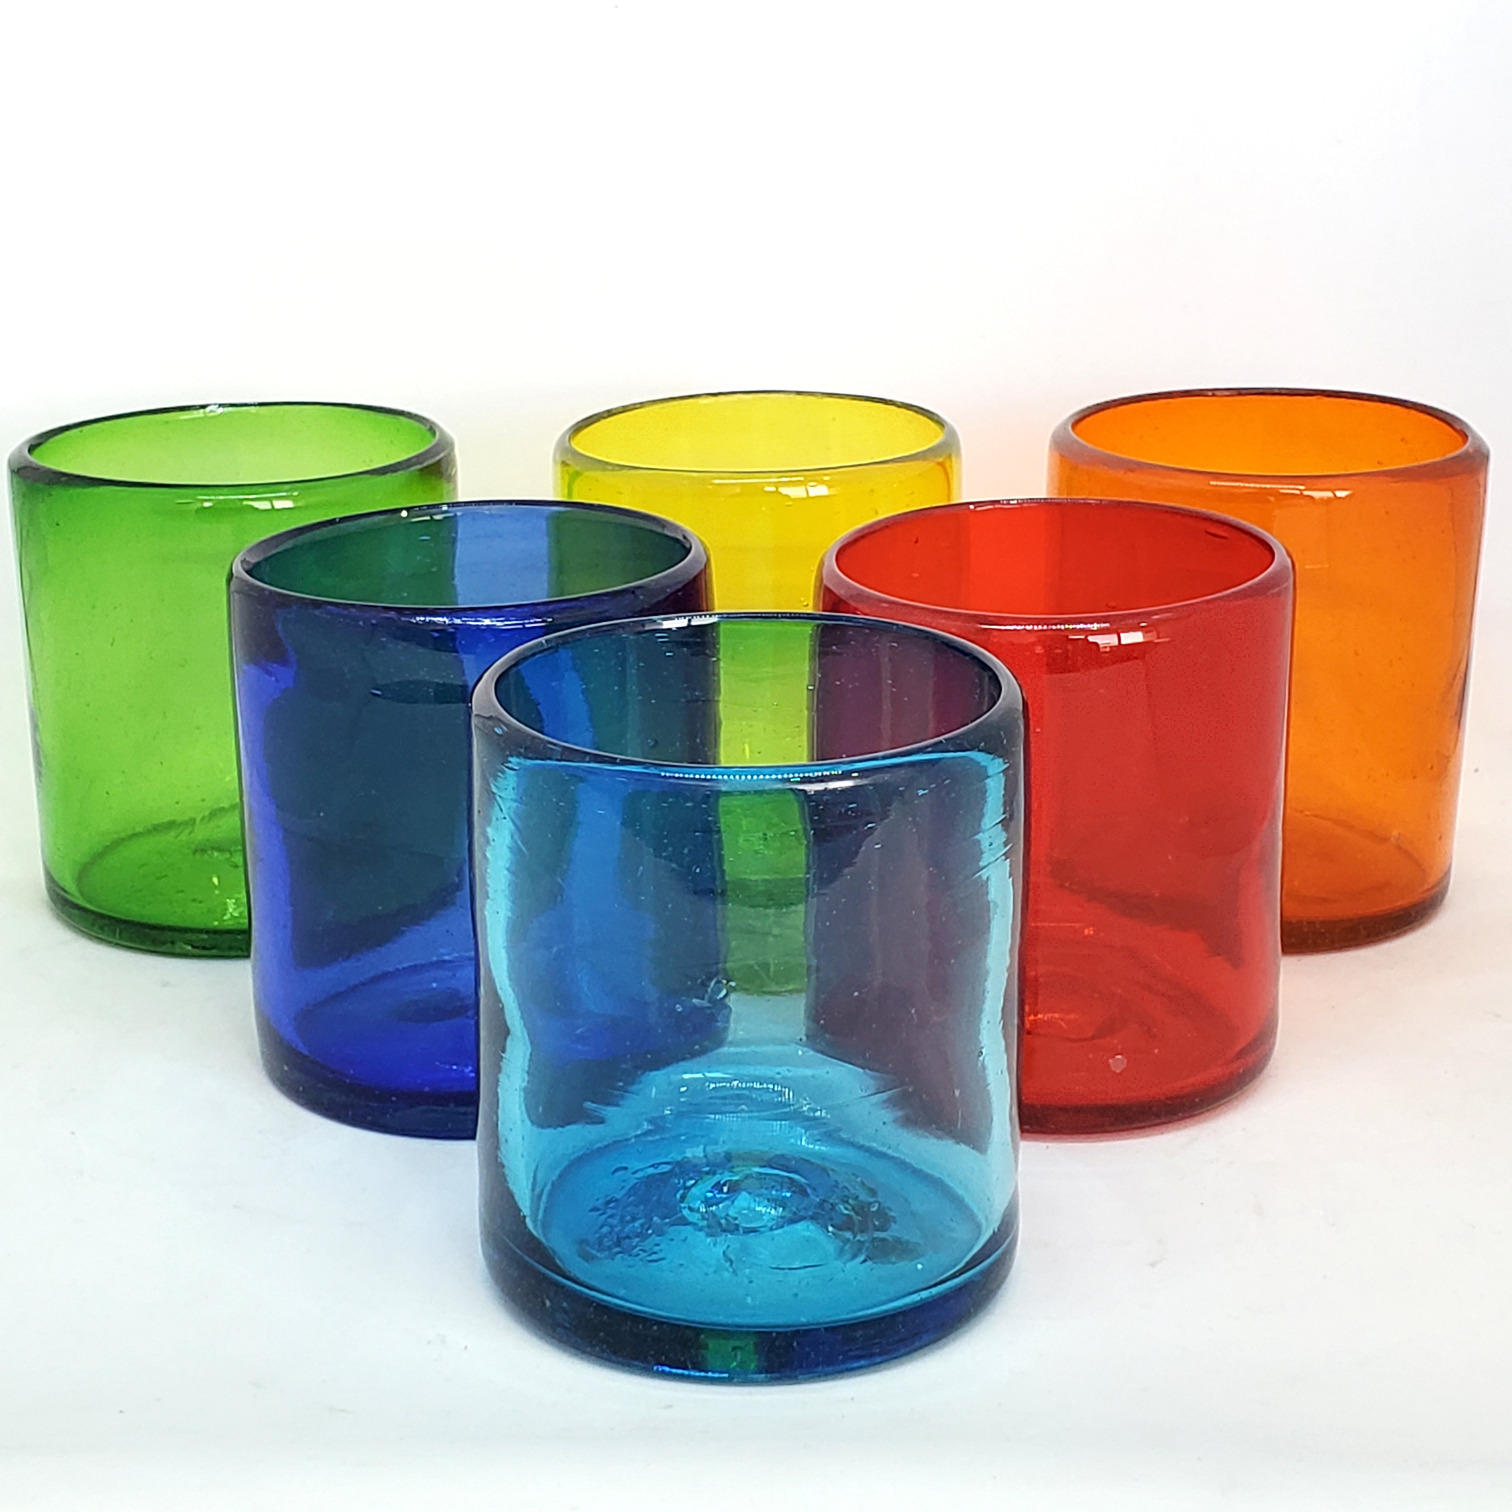 Ofertas / Vasos chicos 9 oz Arcoiris (set de 6) / Éstos artesanales vasos le darán un toque colorido a su bebida favorita.